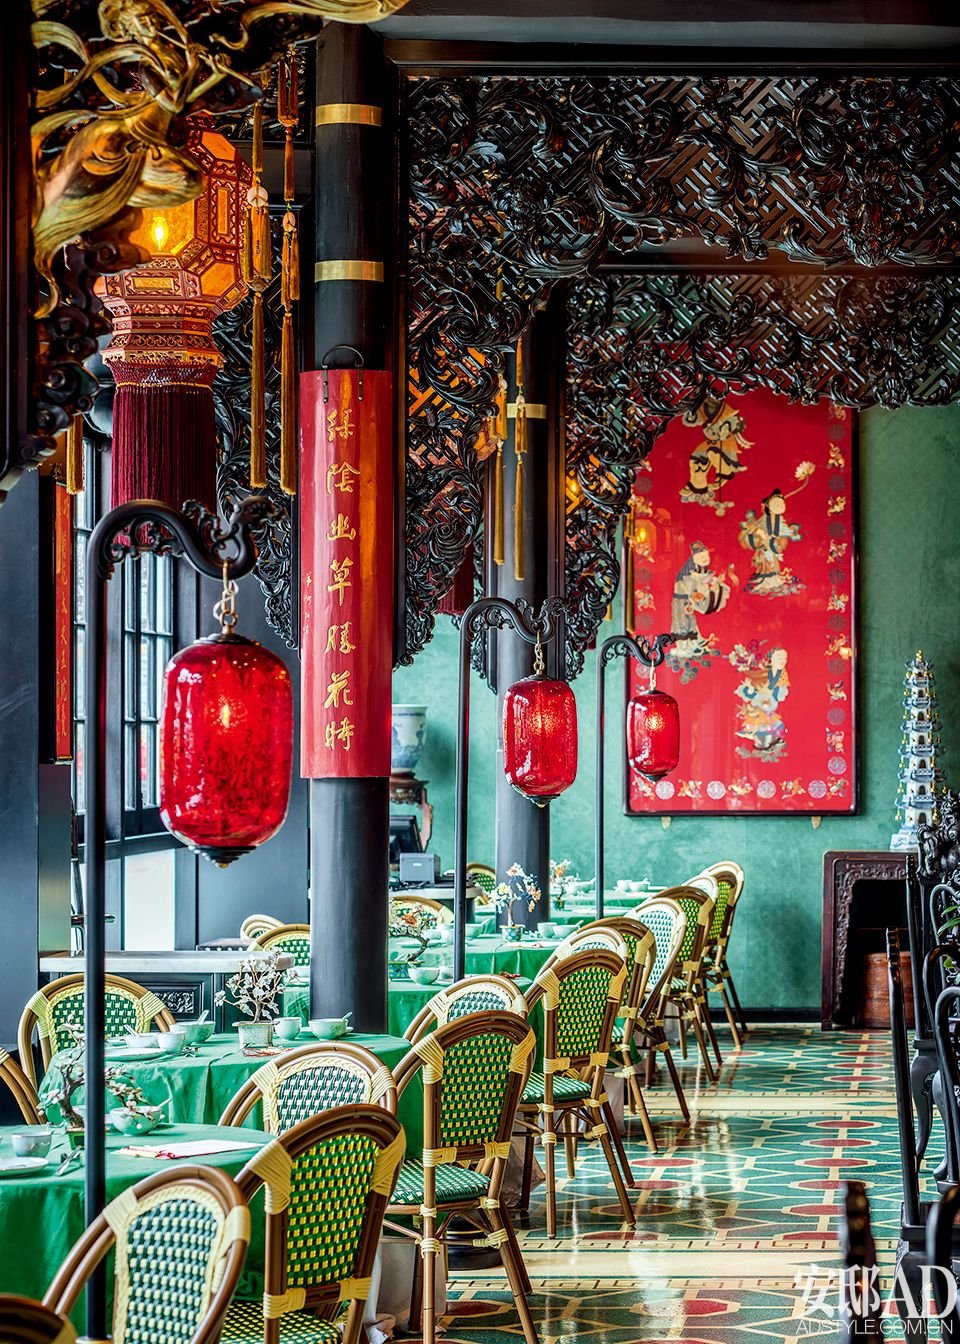 Китайское кафе. Китайский ресторан. Китайский интерьер. Китайский стиль в интерьере. Китайский ресторан интерьер.